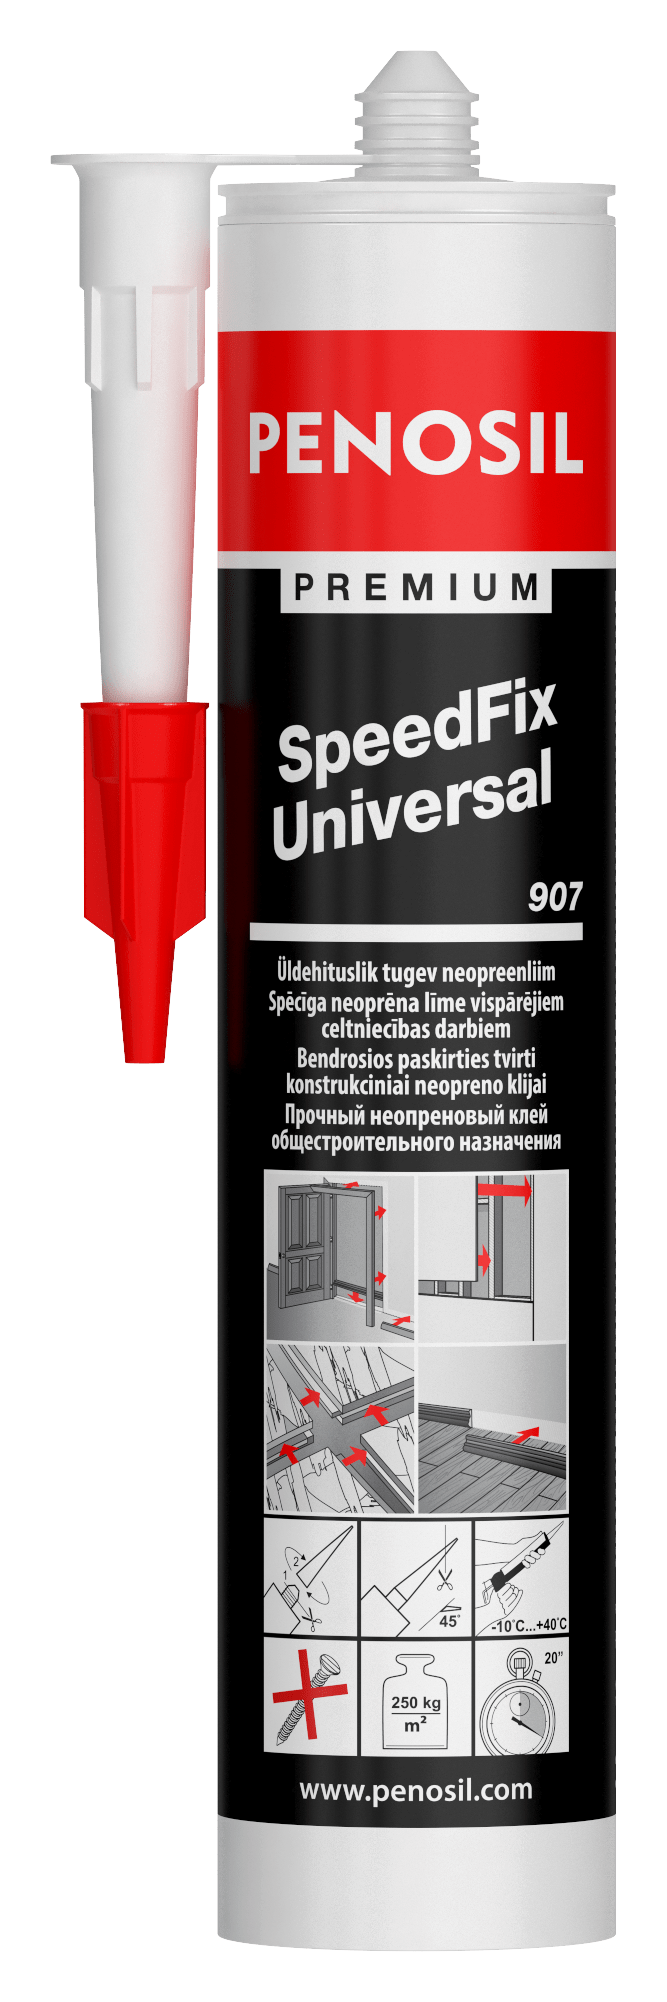 PENOSIL Premium SpeedFix Universal 907